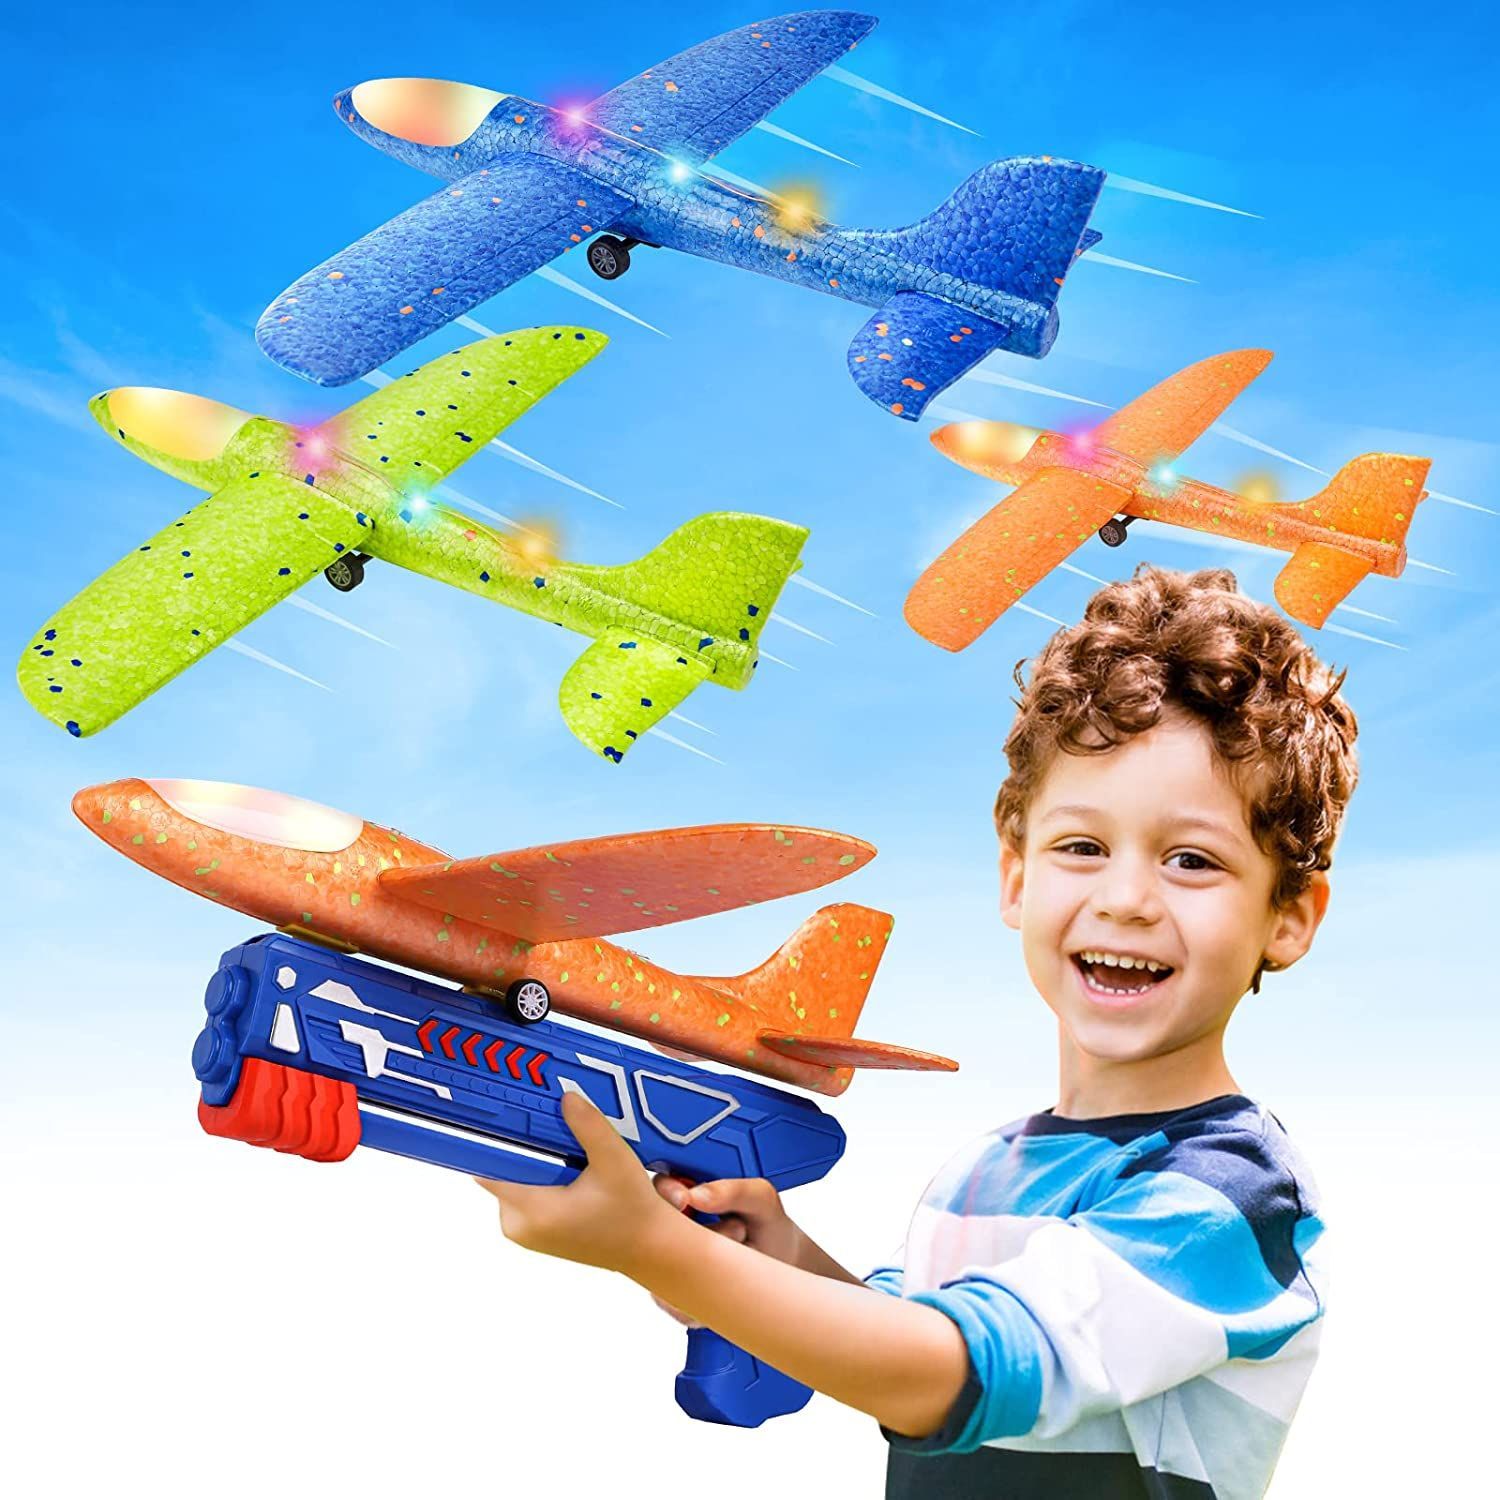 Flying toys